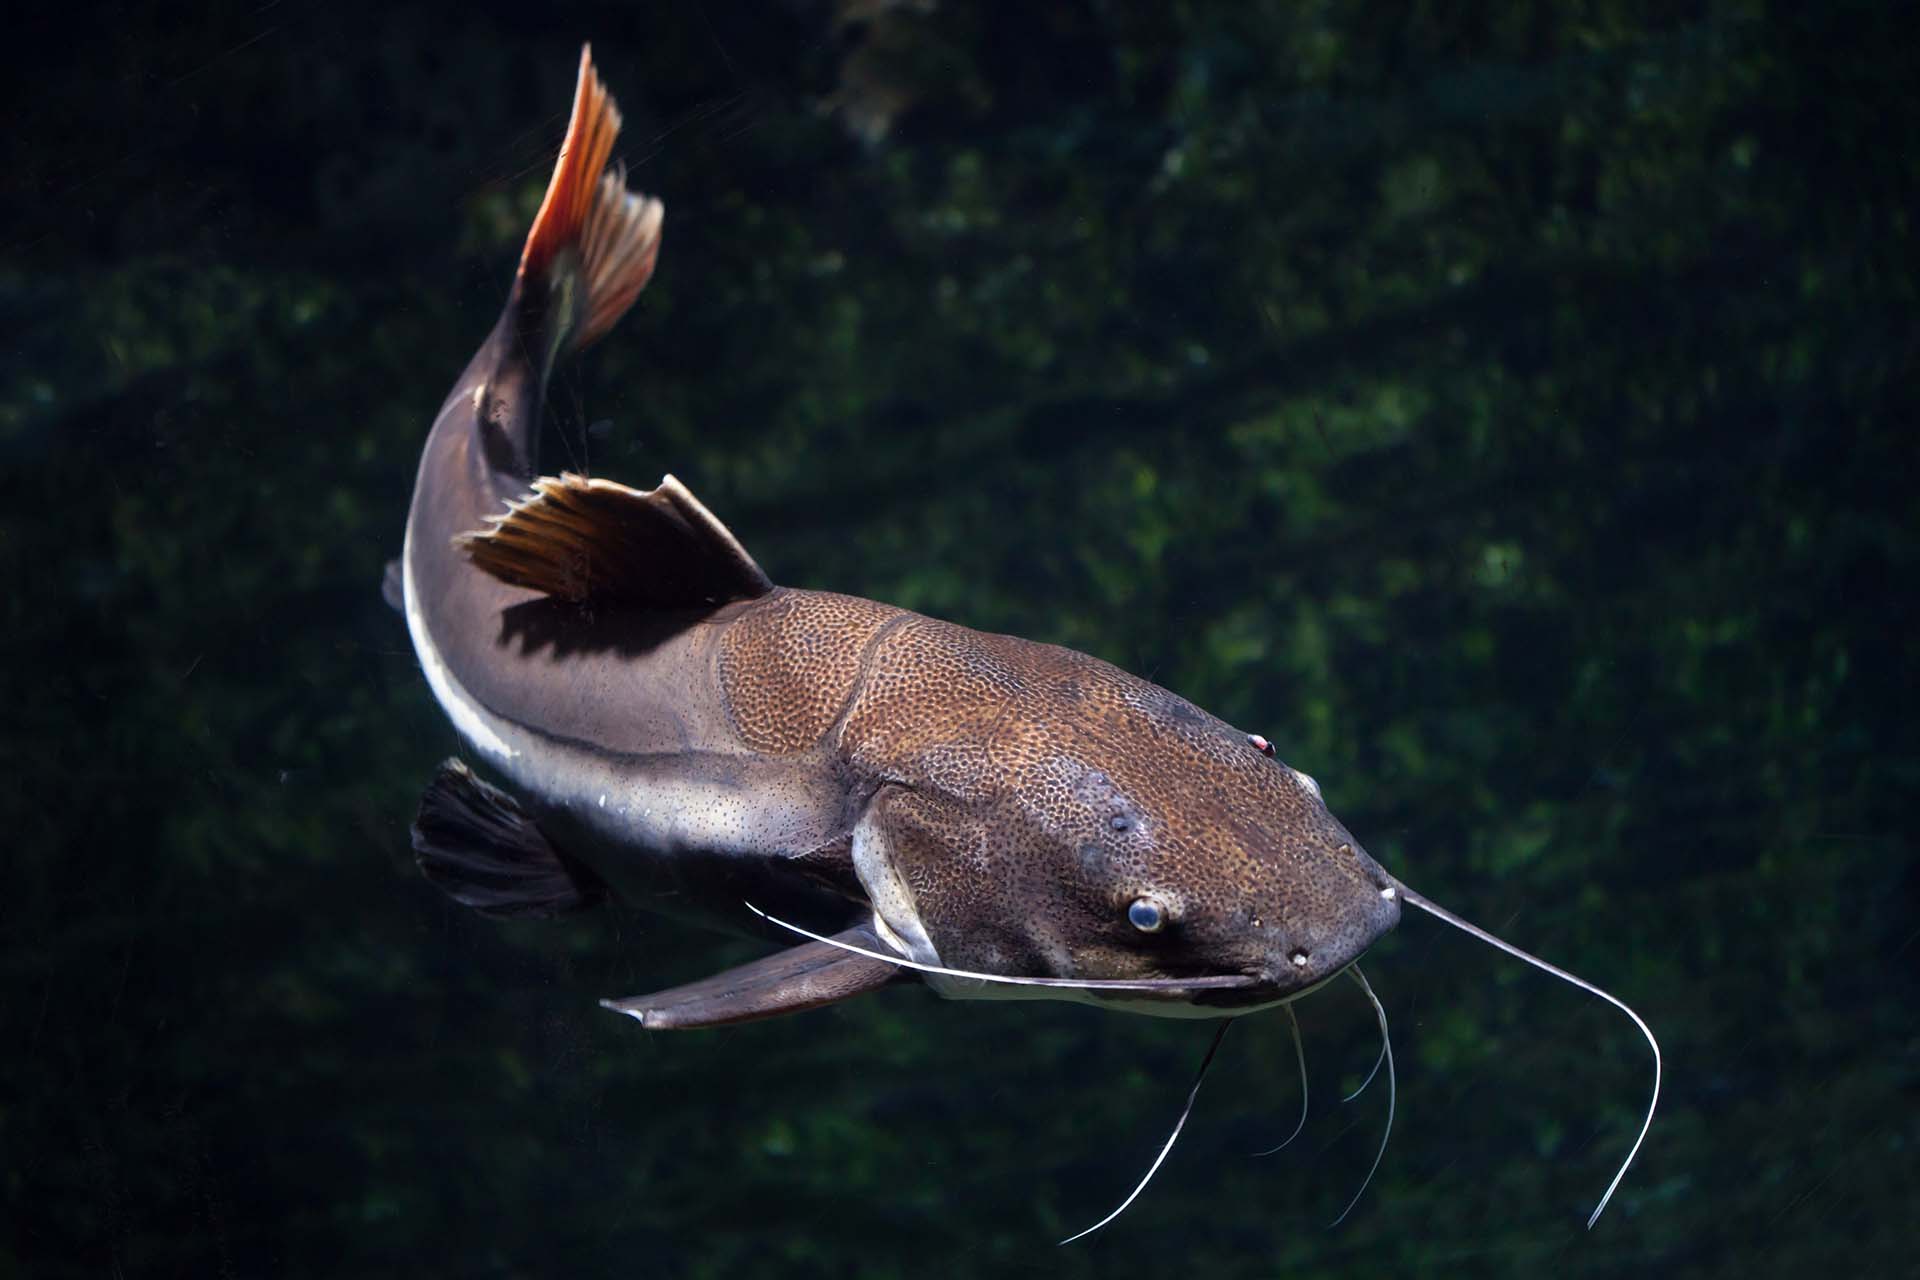 Redtail catfish swimming